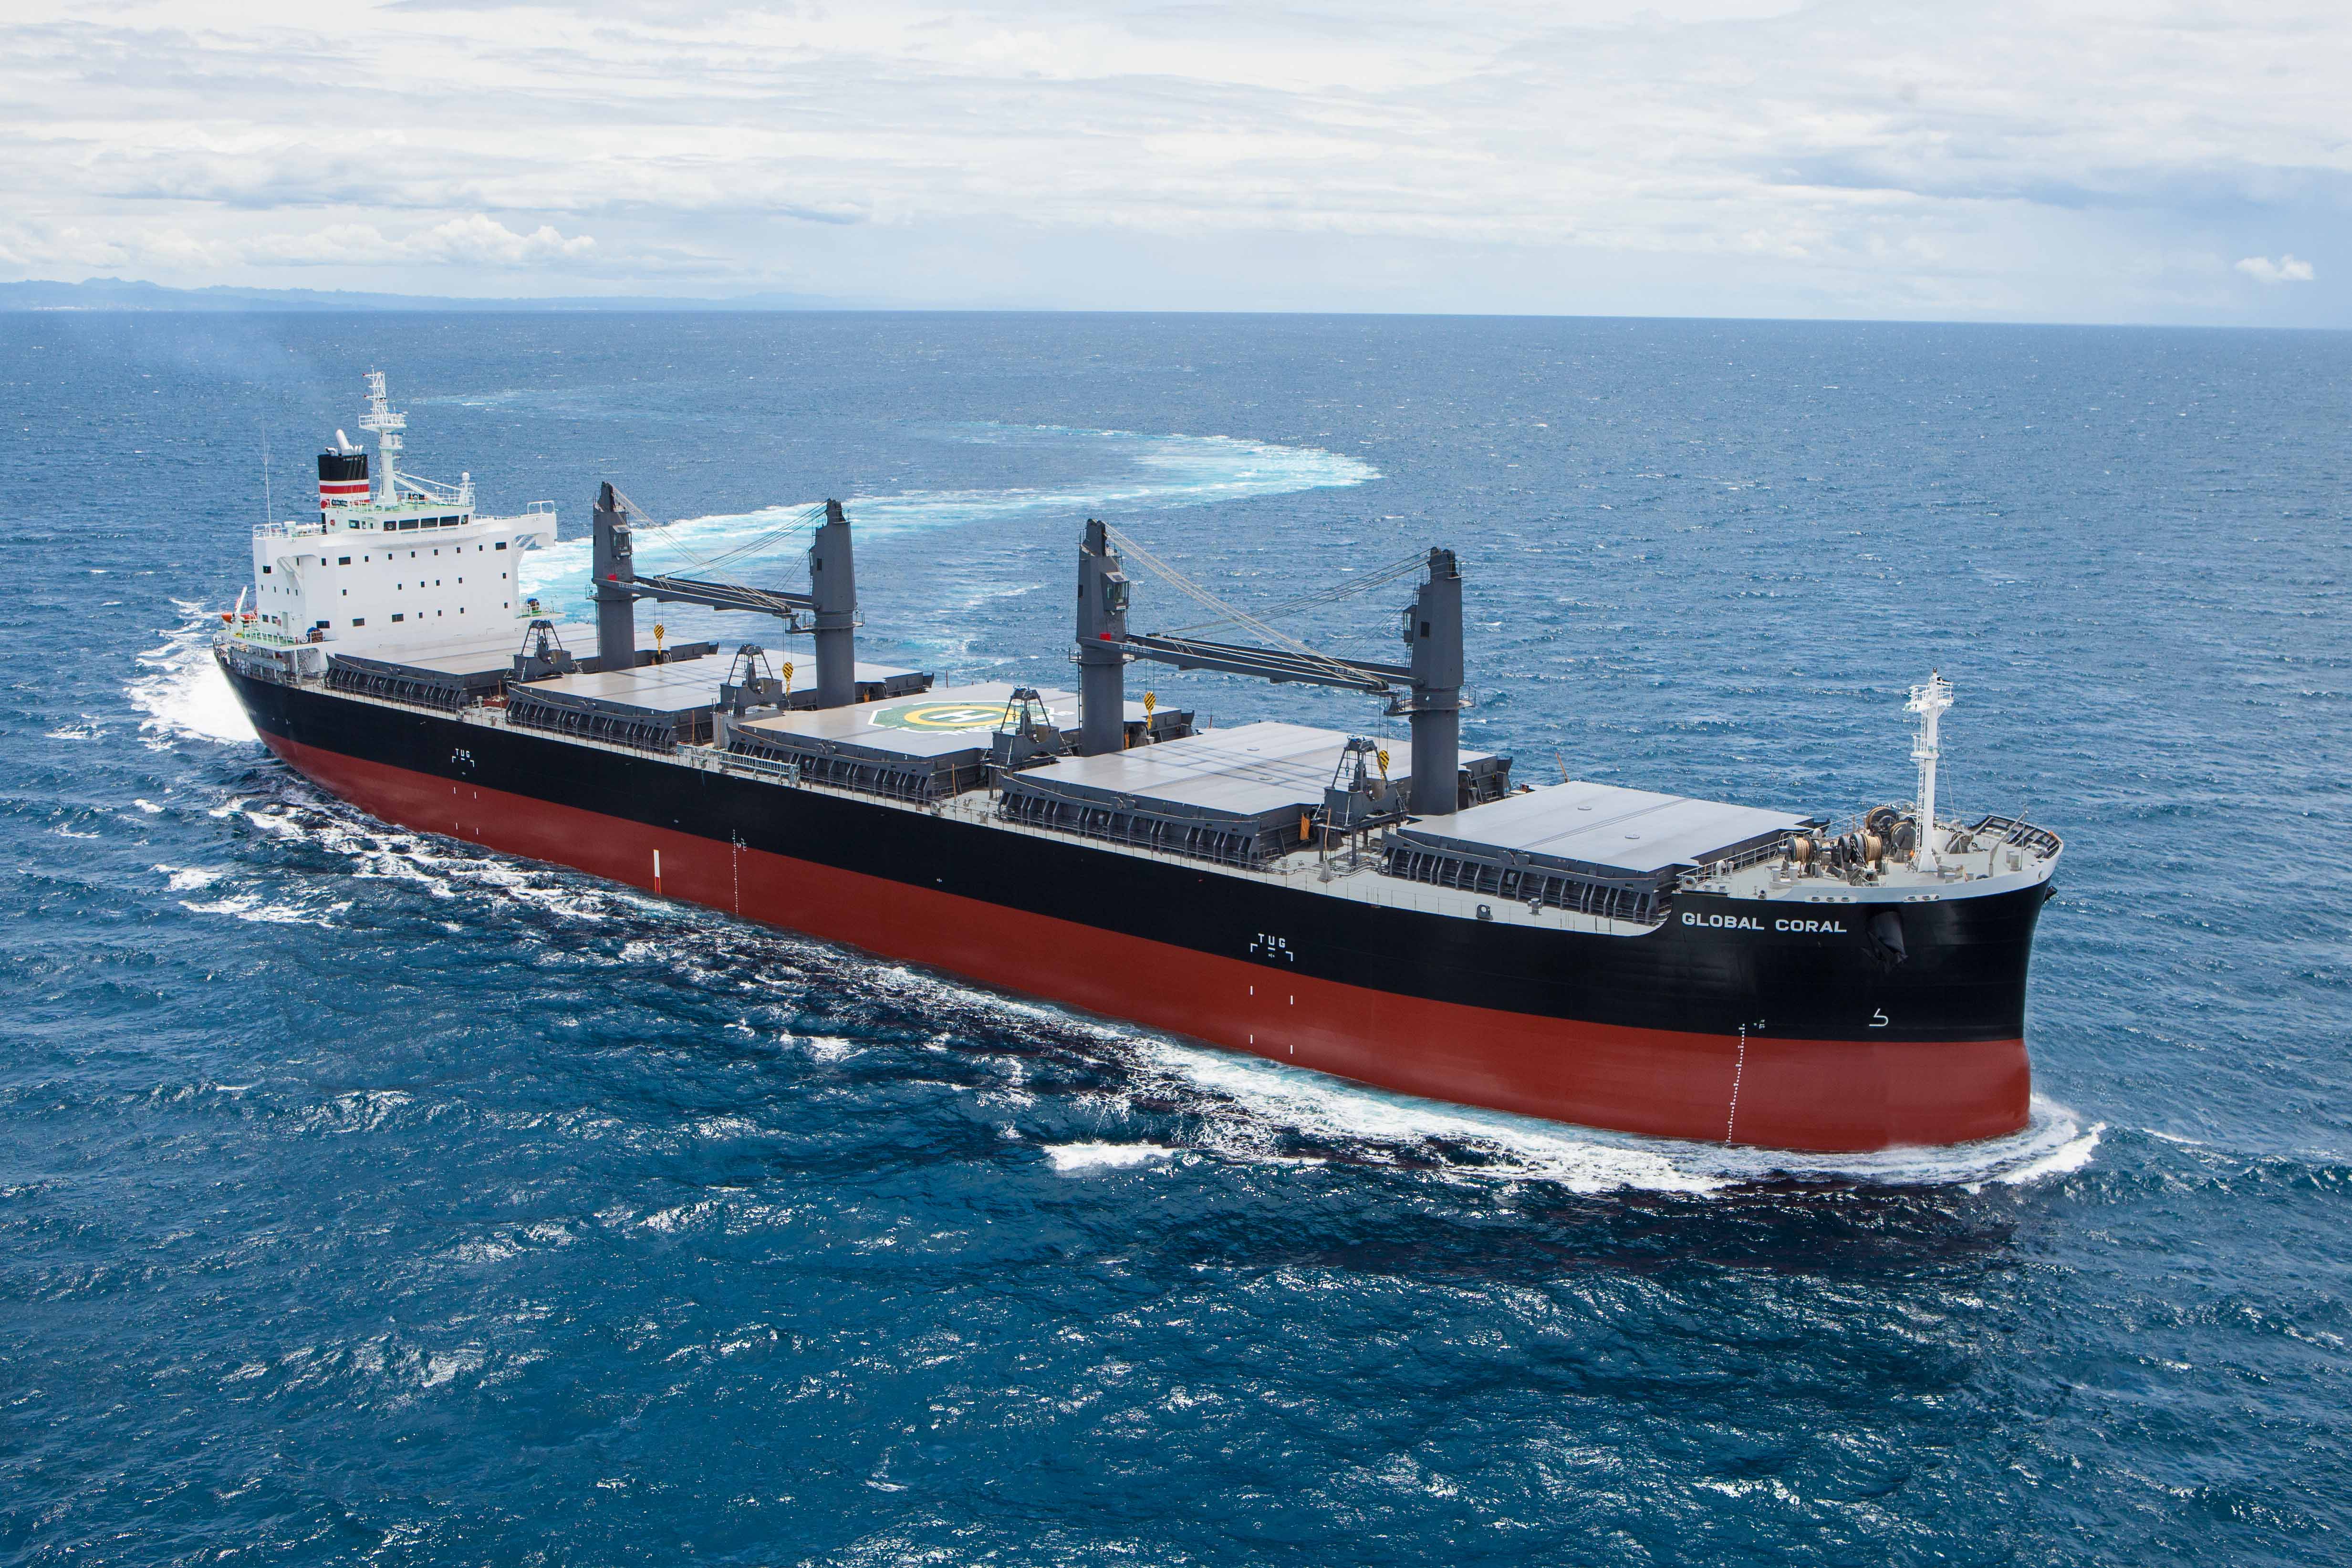 常石造船の海外グループ会社、TSUNEISHI HEAVY INDUSTRIES (CEBU), Inc.でばら積み貨物船“TESS45BOX”第3隻目を竣工・引渡